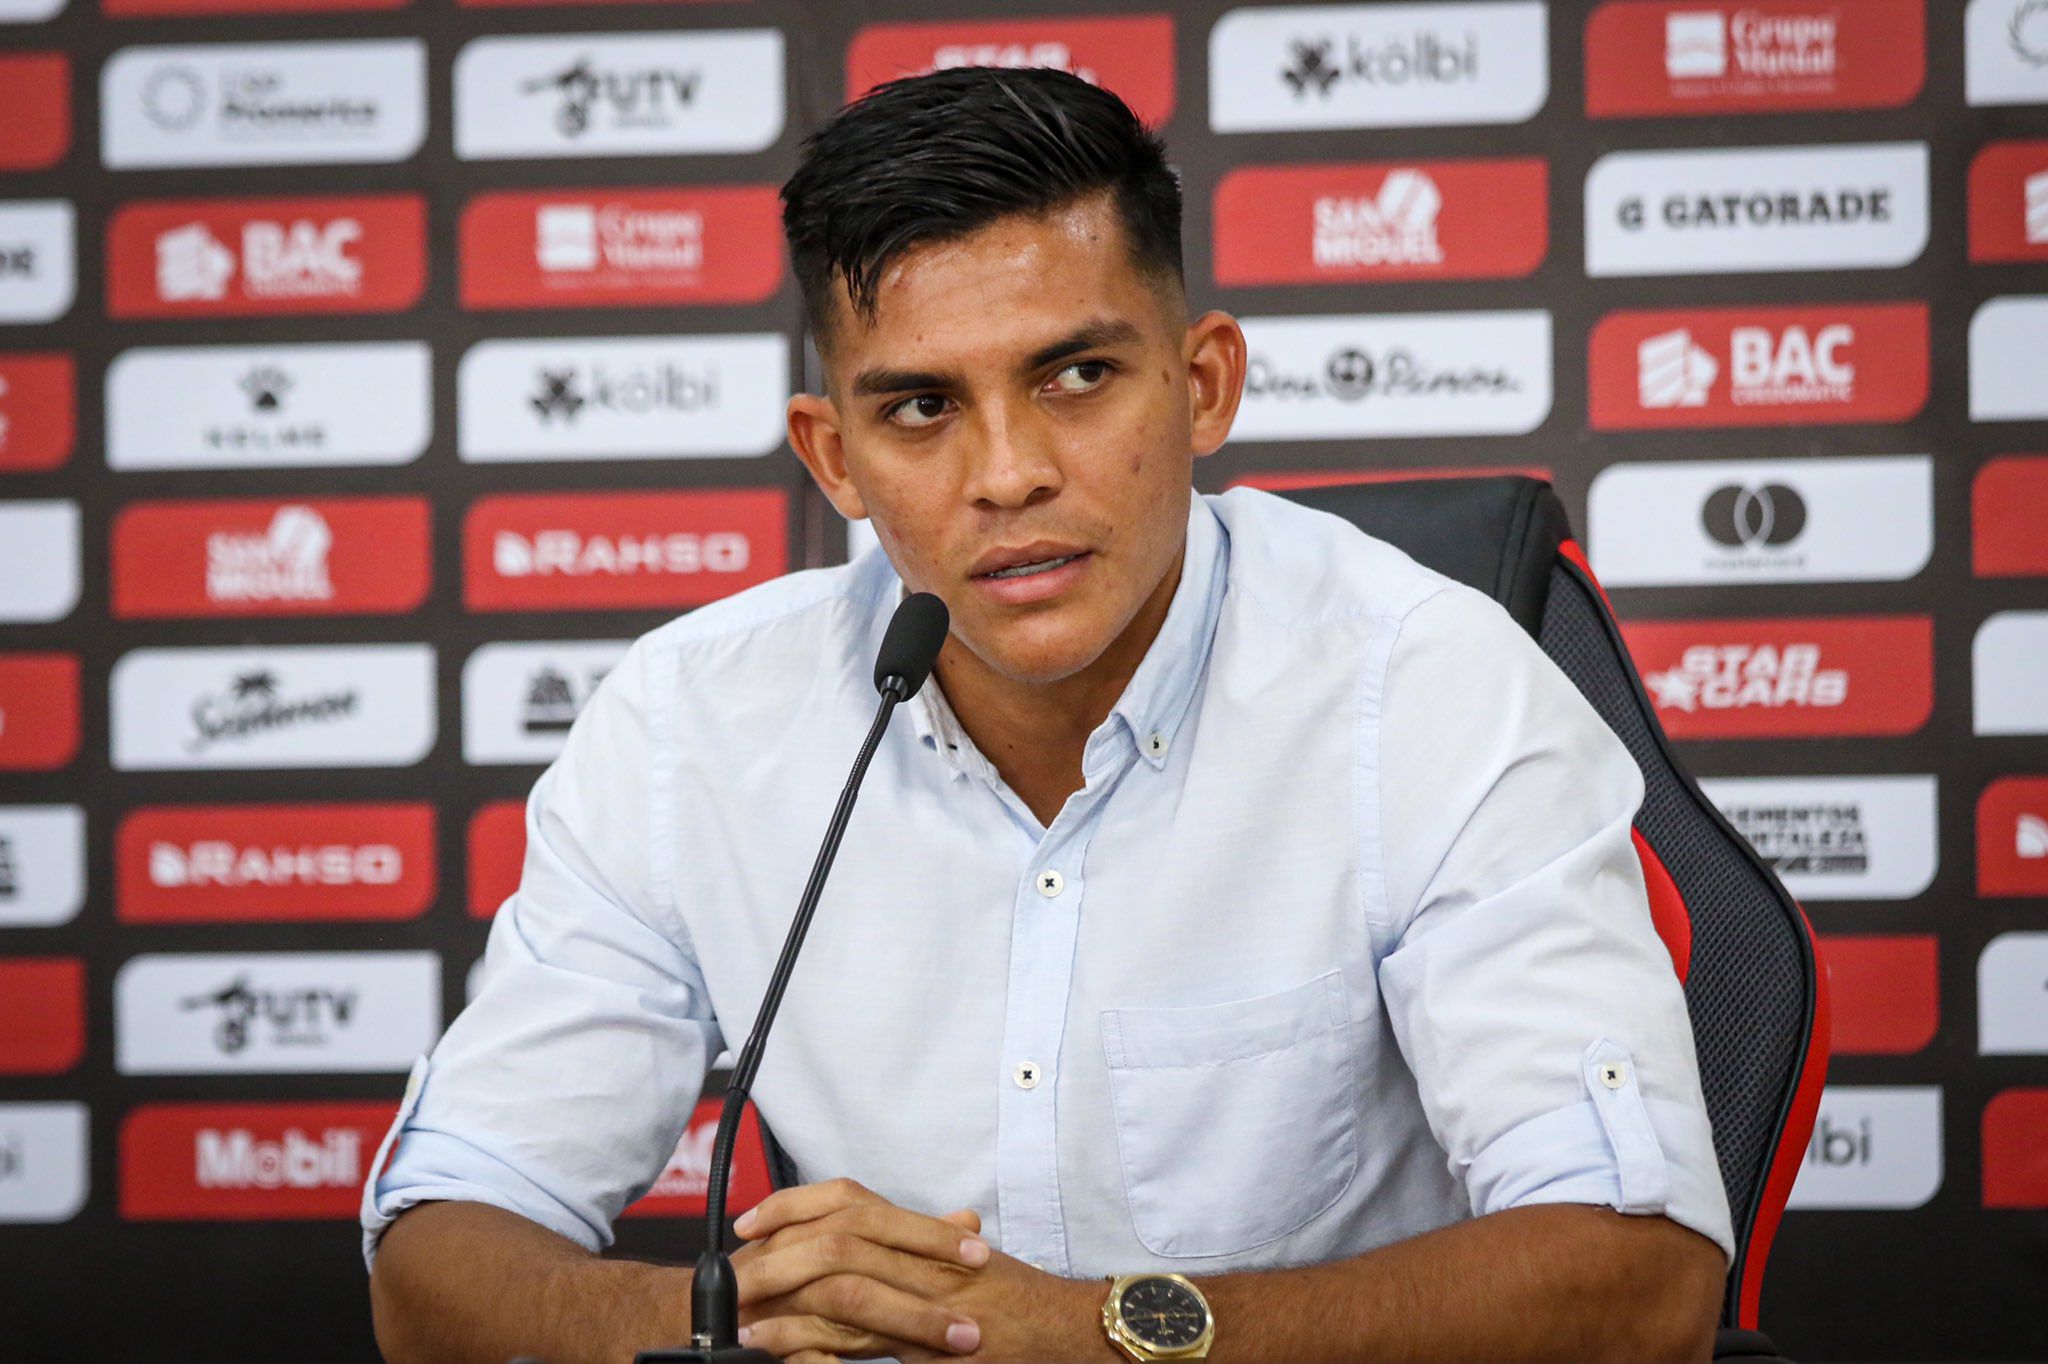 En agosto de 2021 se dio a conocer que Alonso Martínez pasó a ser ficha de City Football Group.